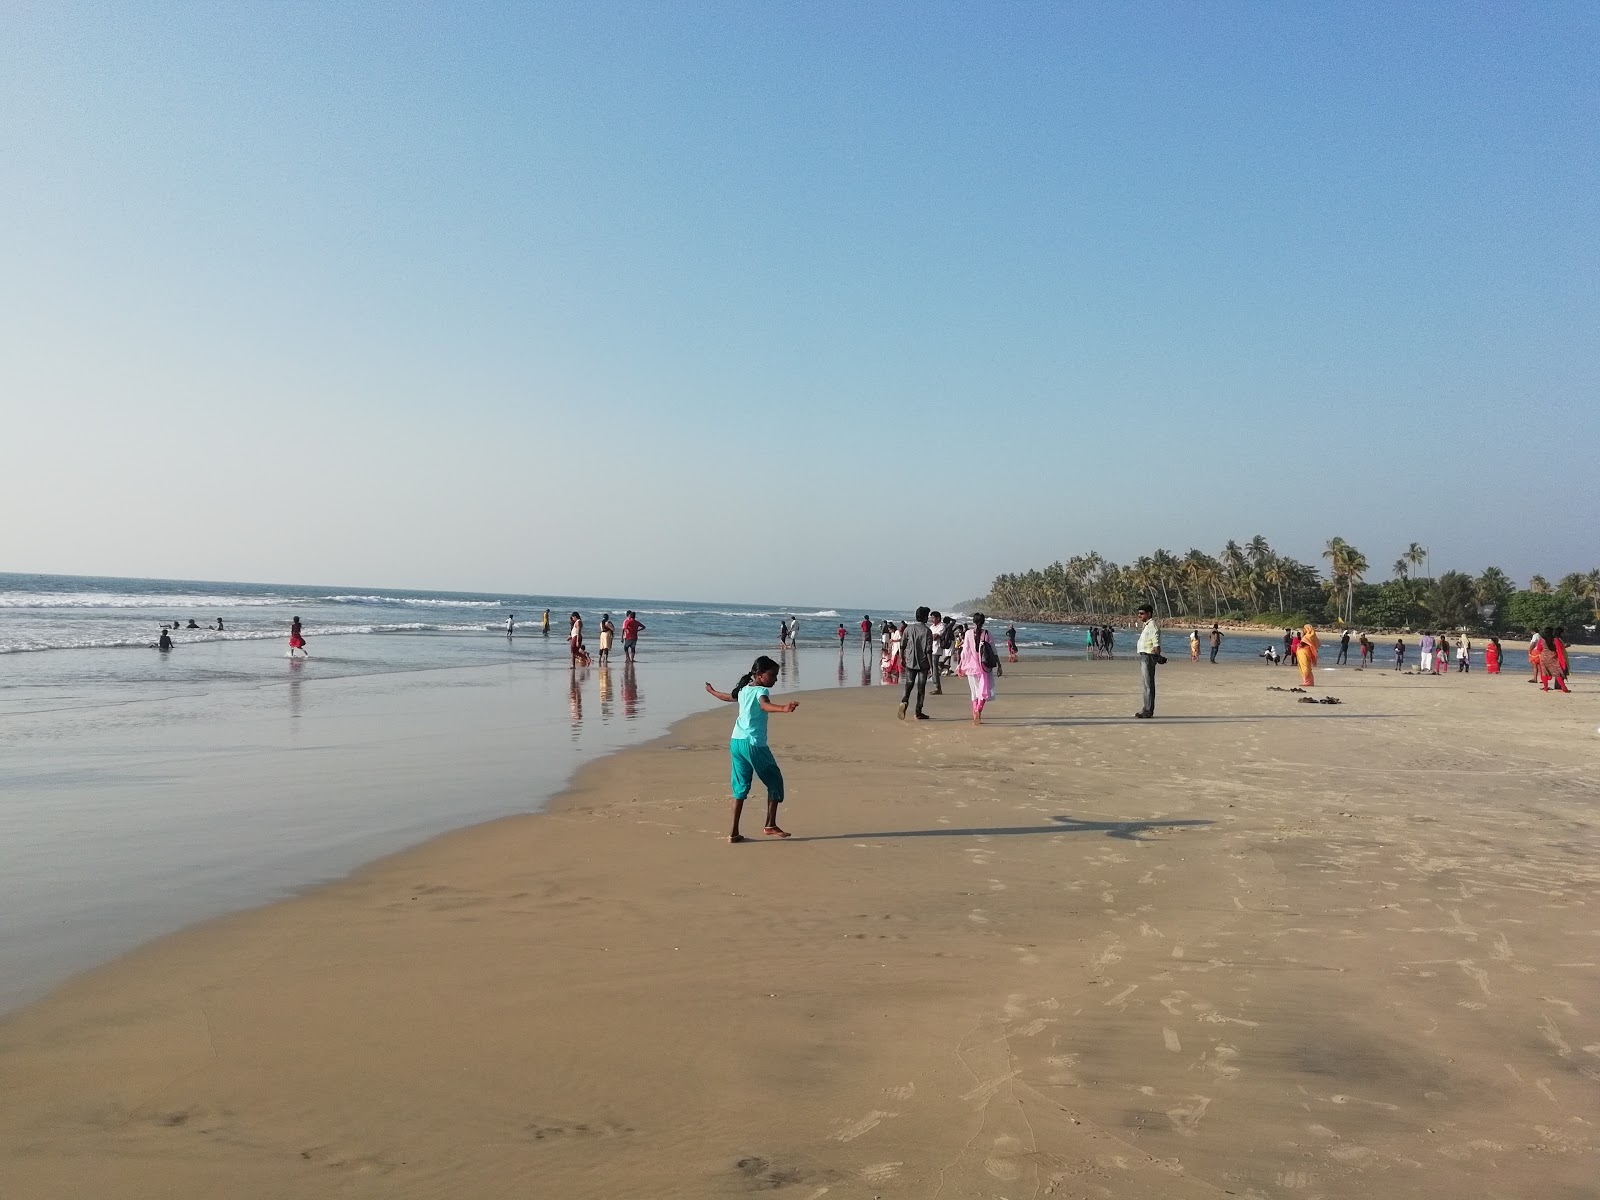 Andhakaranazhi Beach'in fotoğrafı geniş plaj ile birlikte